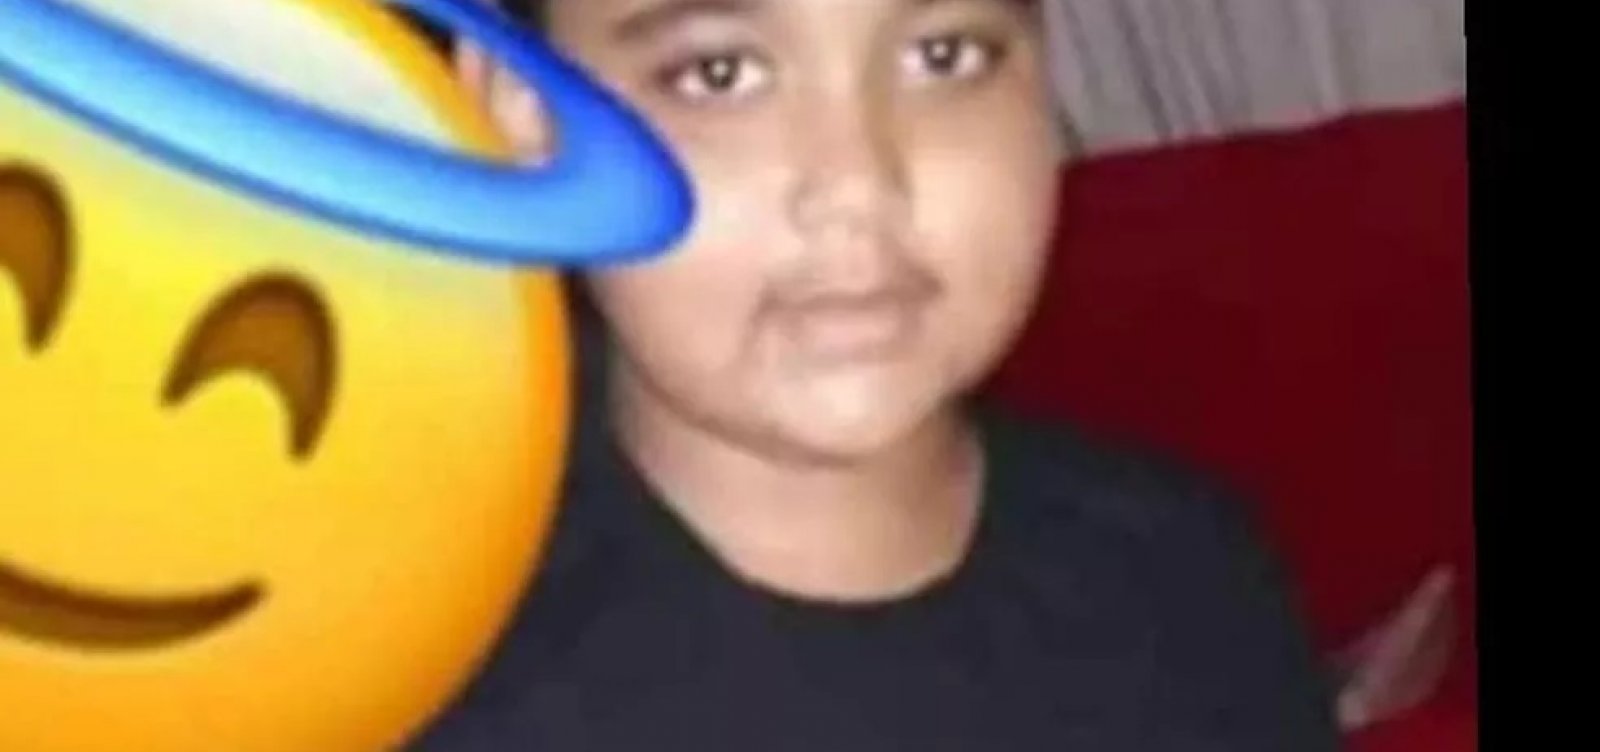 Criança de 10 anos morre após ser baleada em troca de tiros na RMS